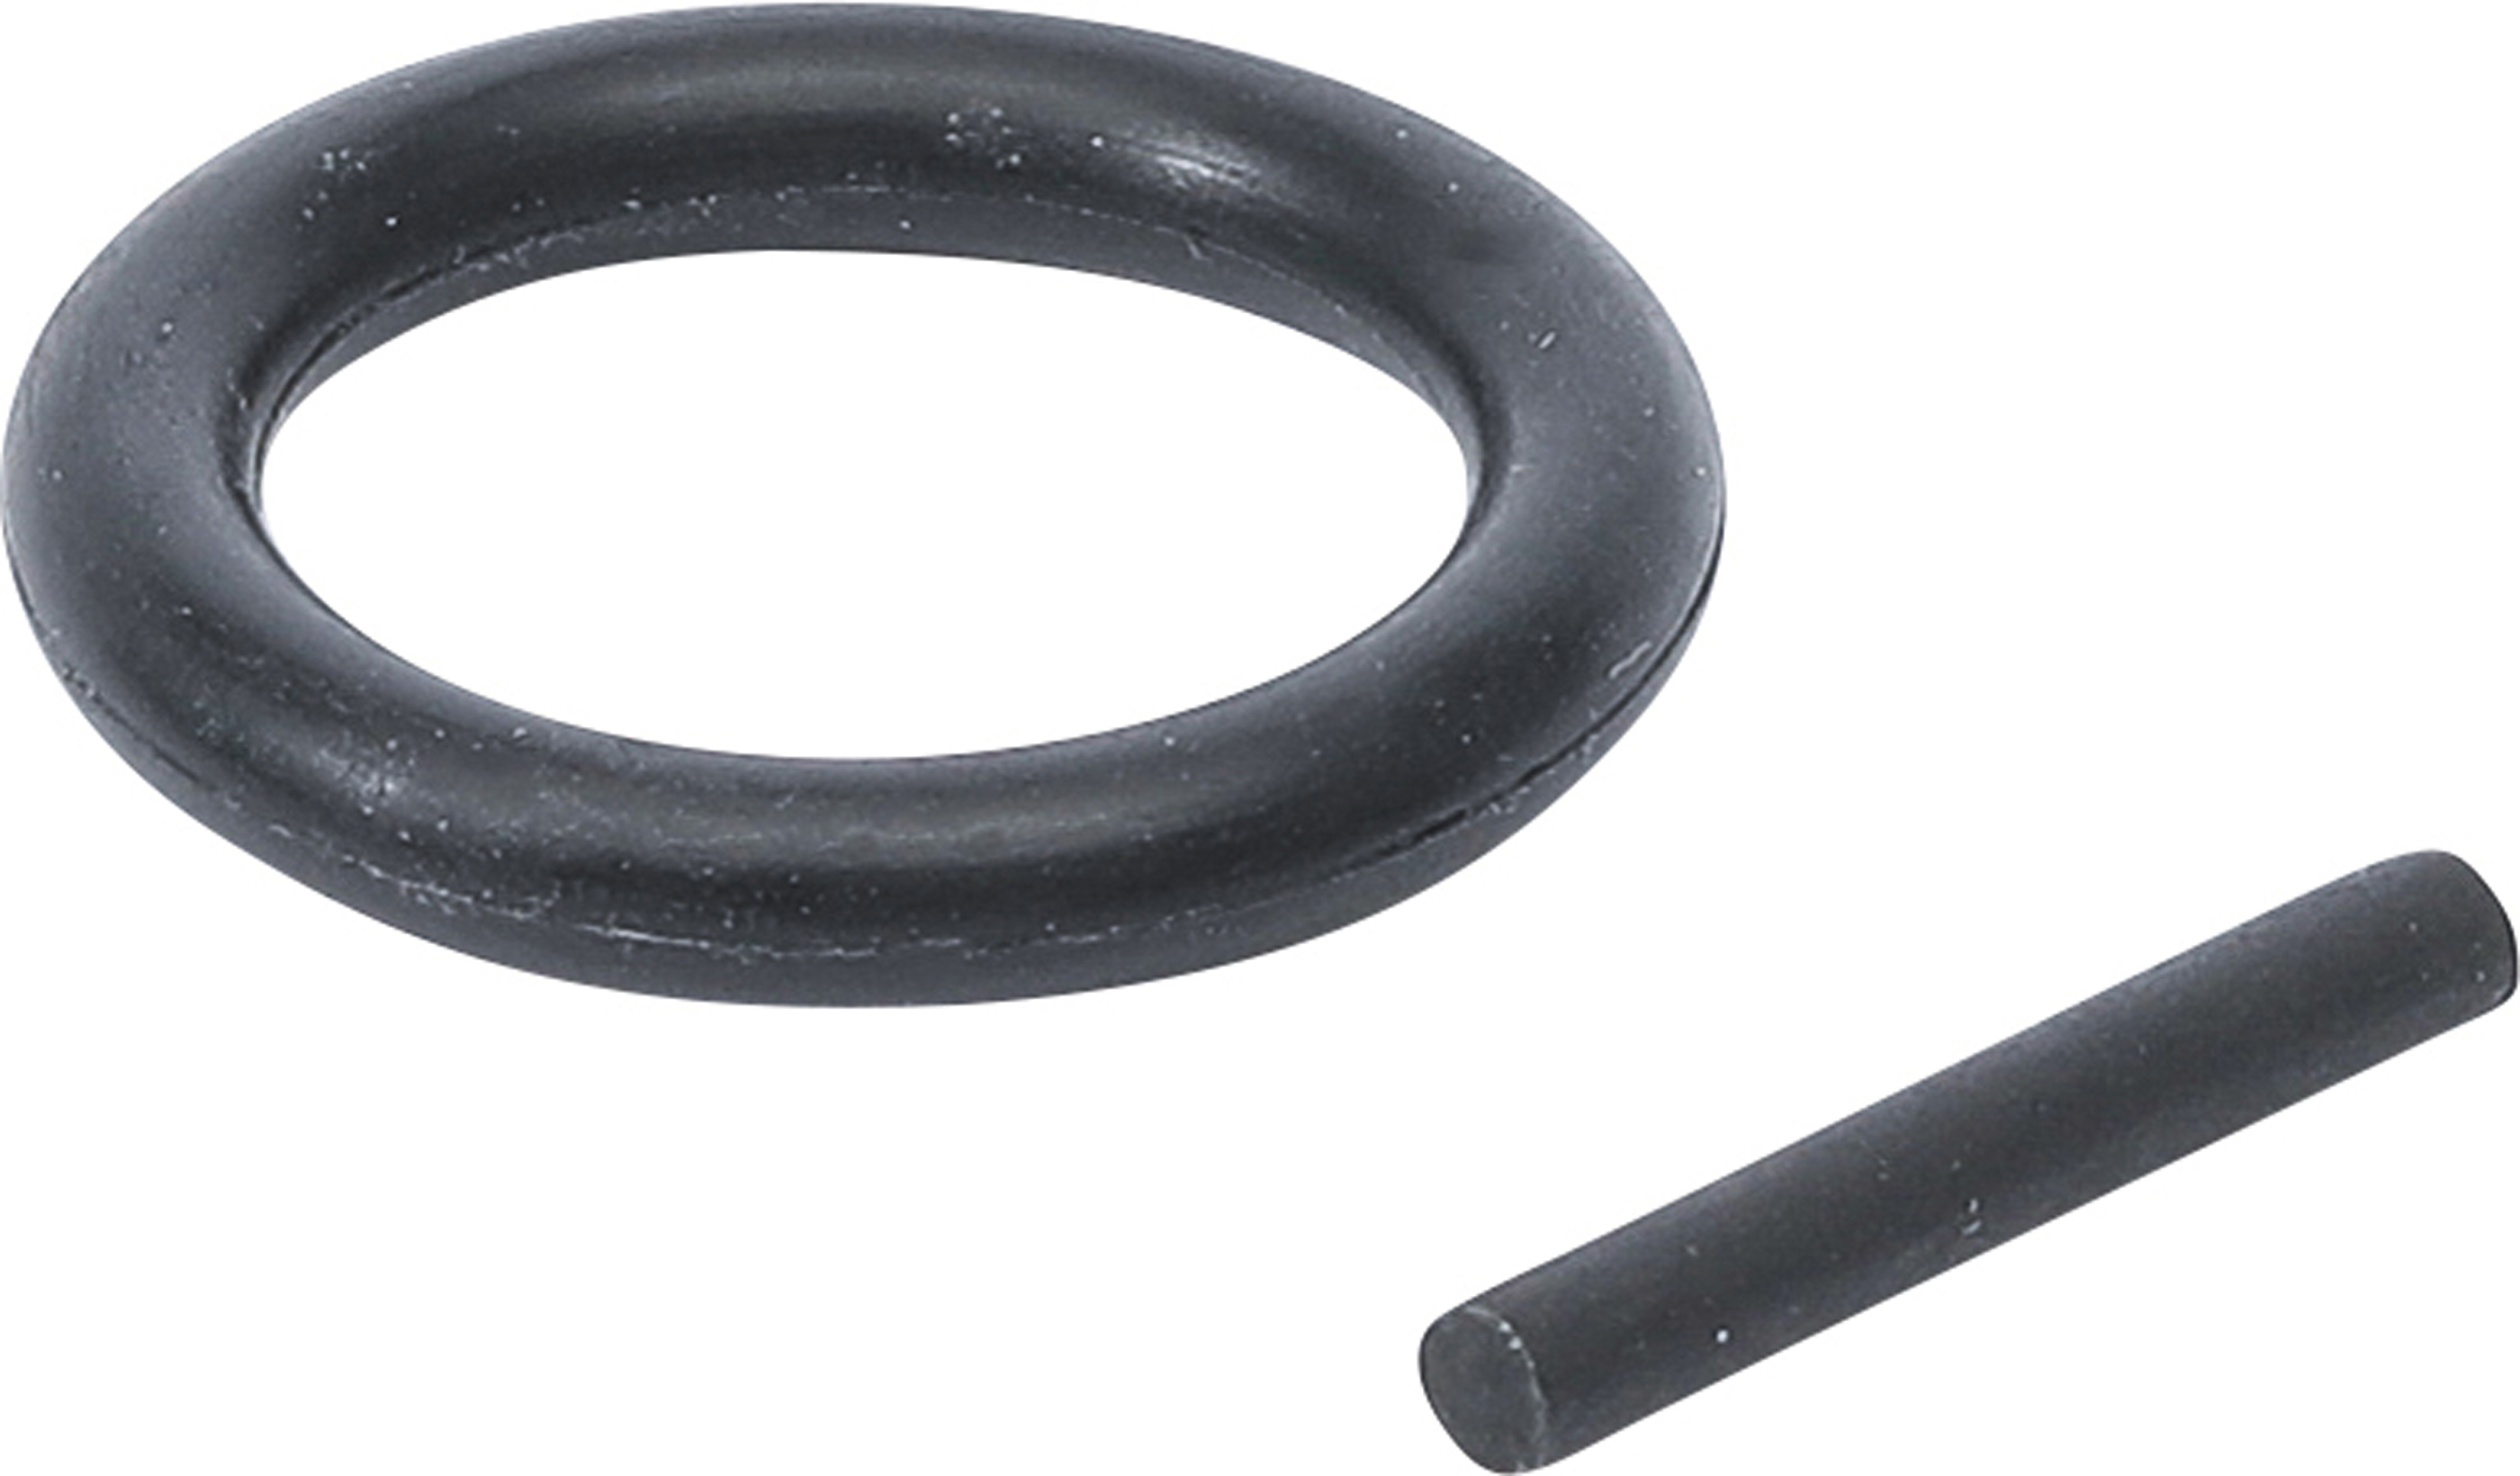 BGS 6860 Set inel Oring şi ştift de siguranţă pentru blocare tubulare de impact  8 - 14 mm, 5/16" - 5/8" cu antrenare 12,5 mm (1/2")